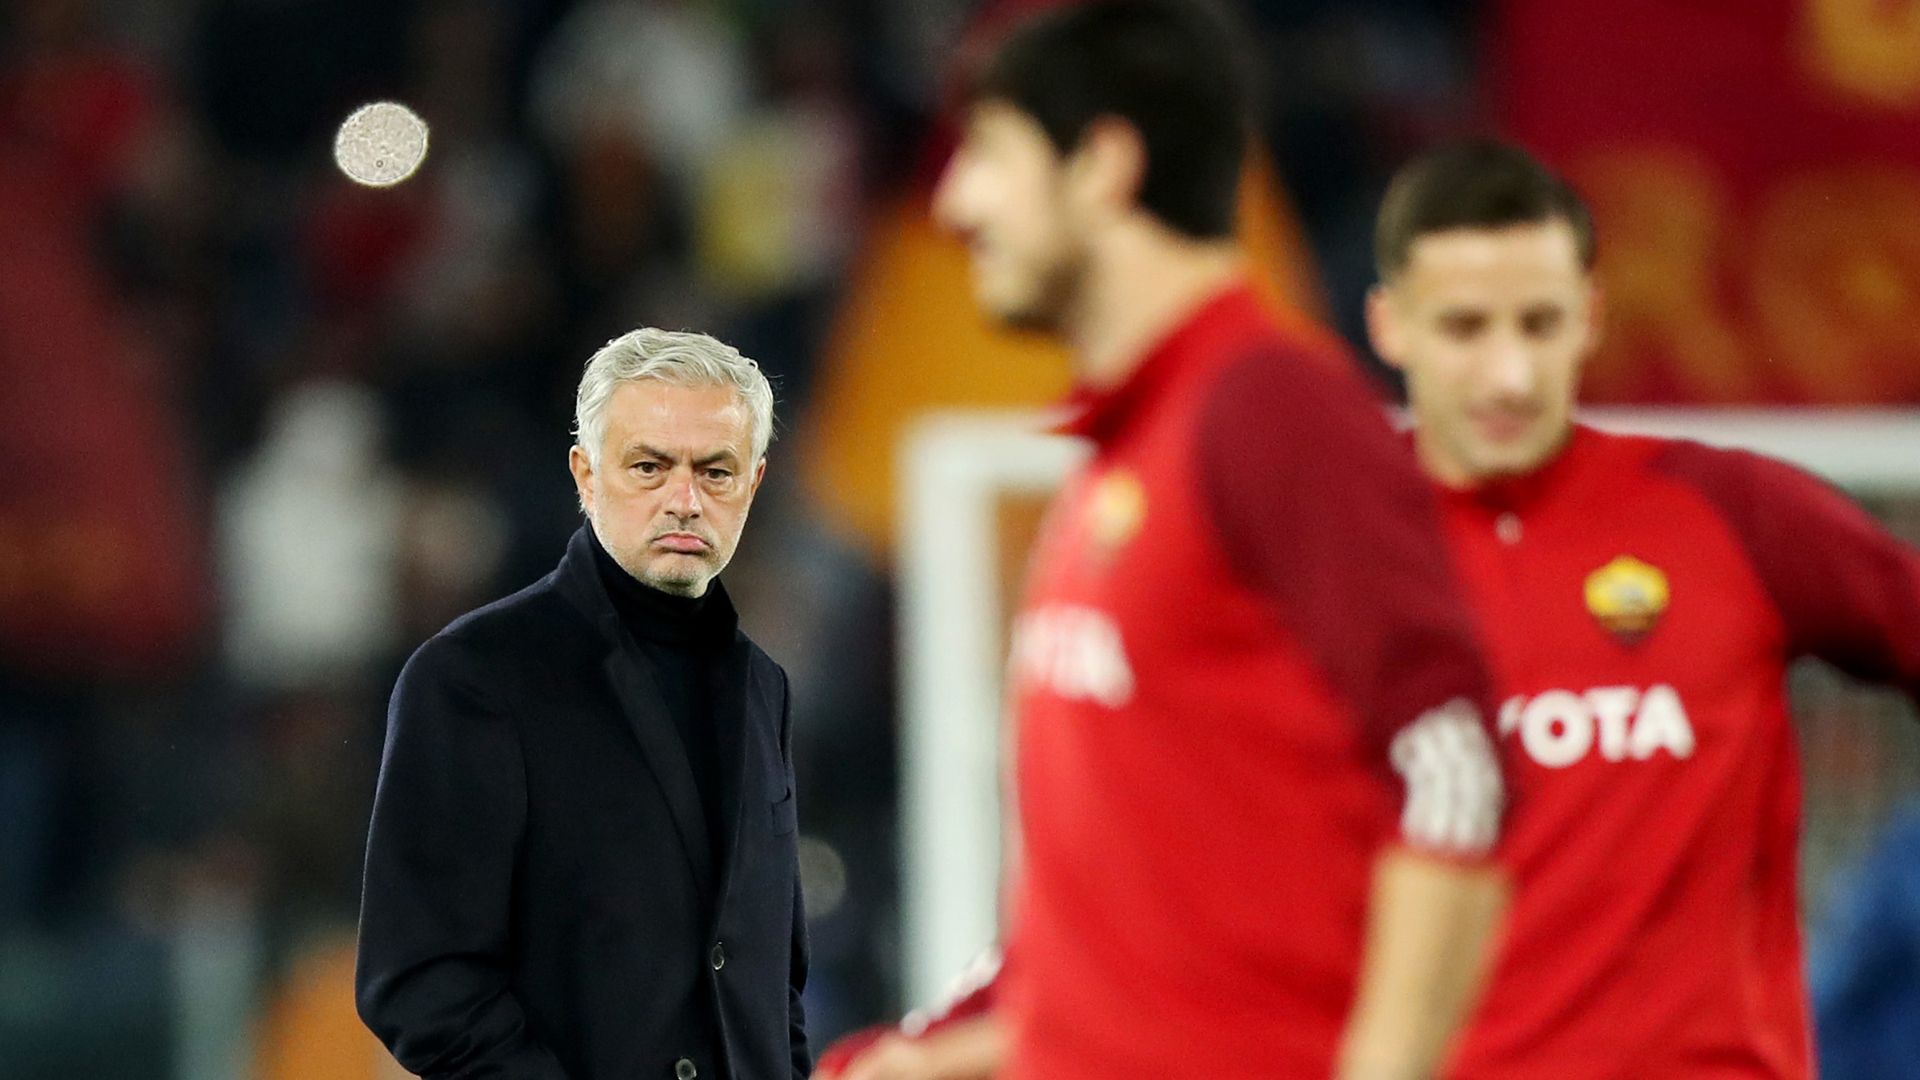 José Mourinho enquanto estava comandando a Roma (Crédito: Getty Images)